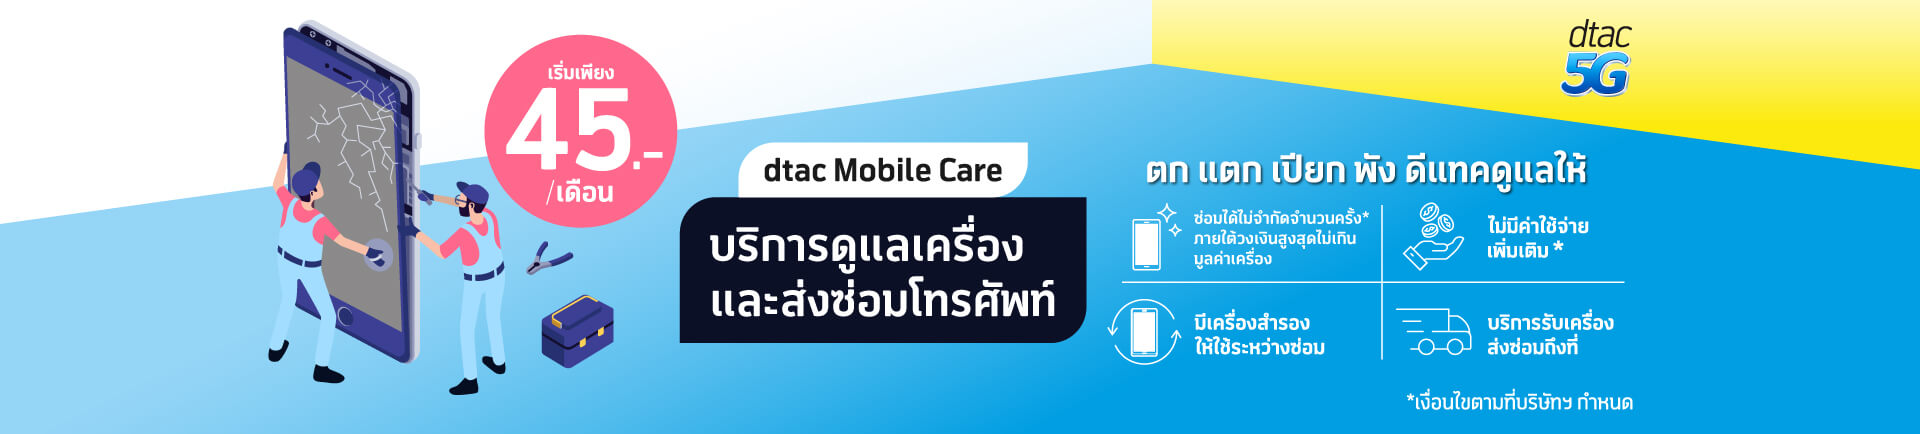 dtac-mobile-card